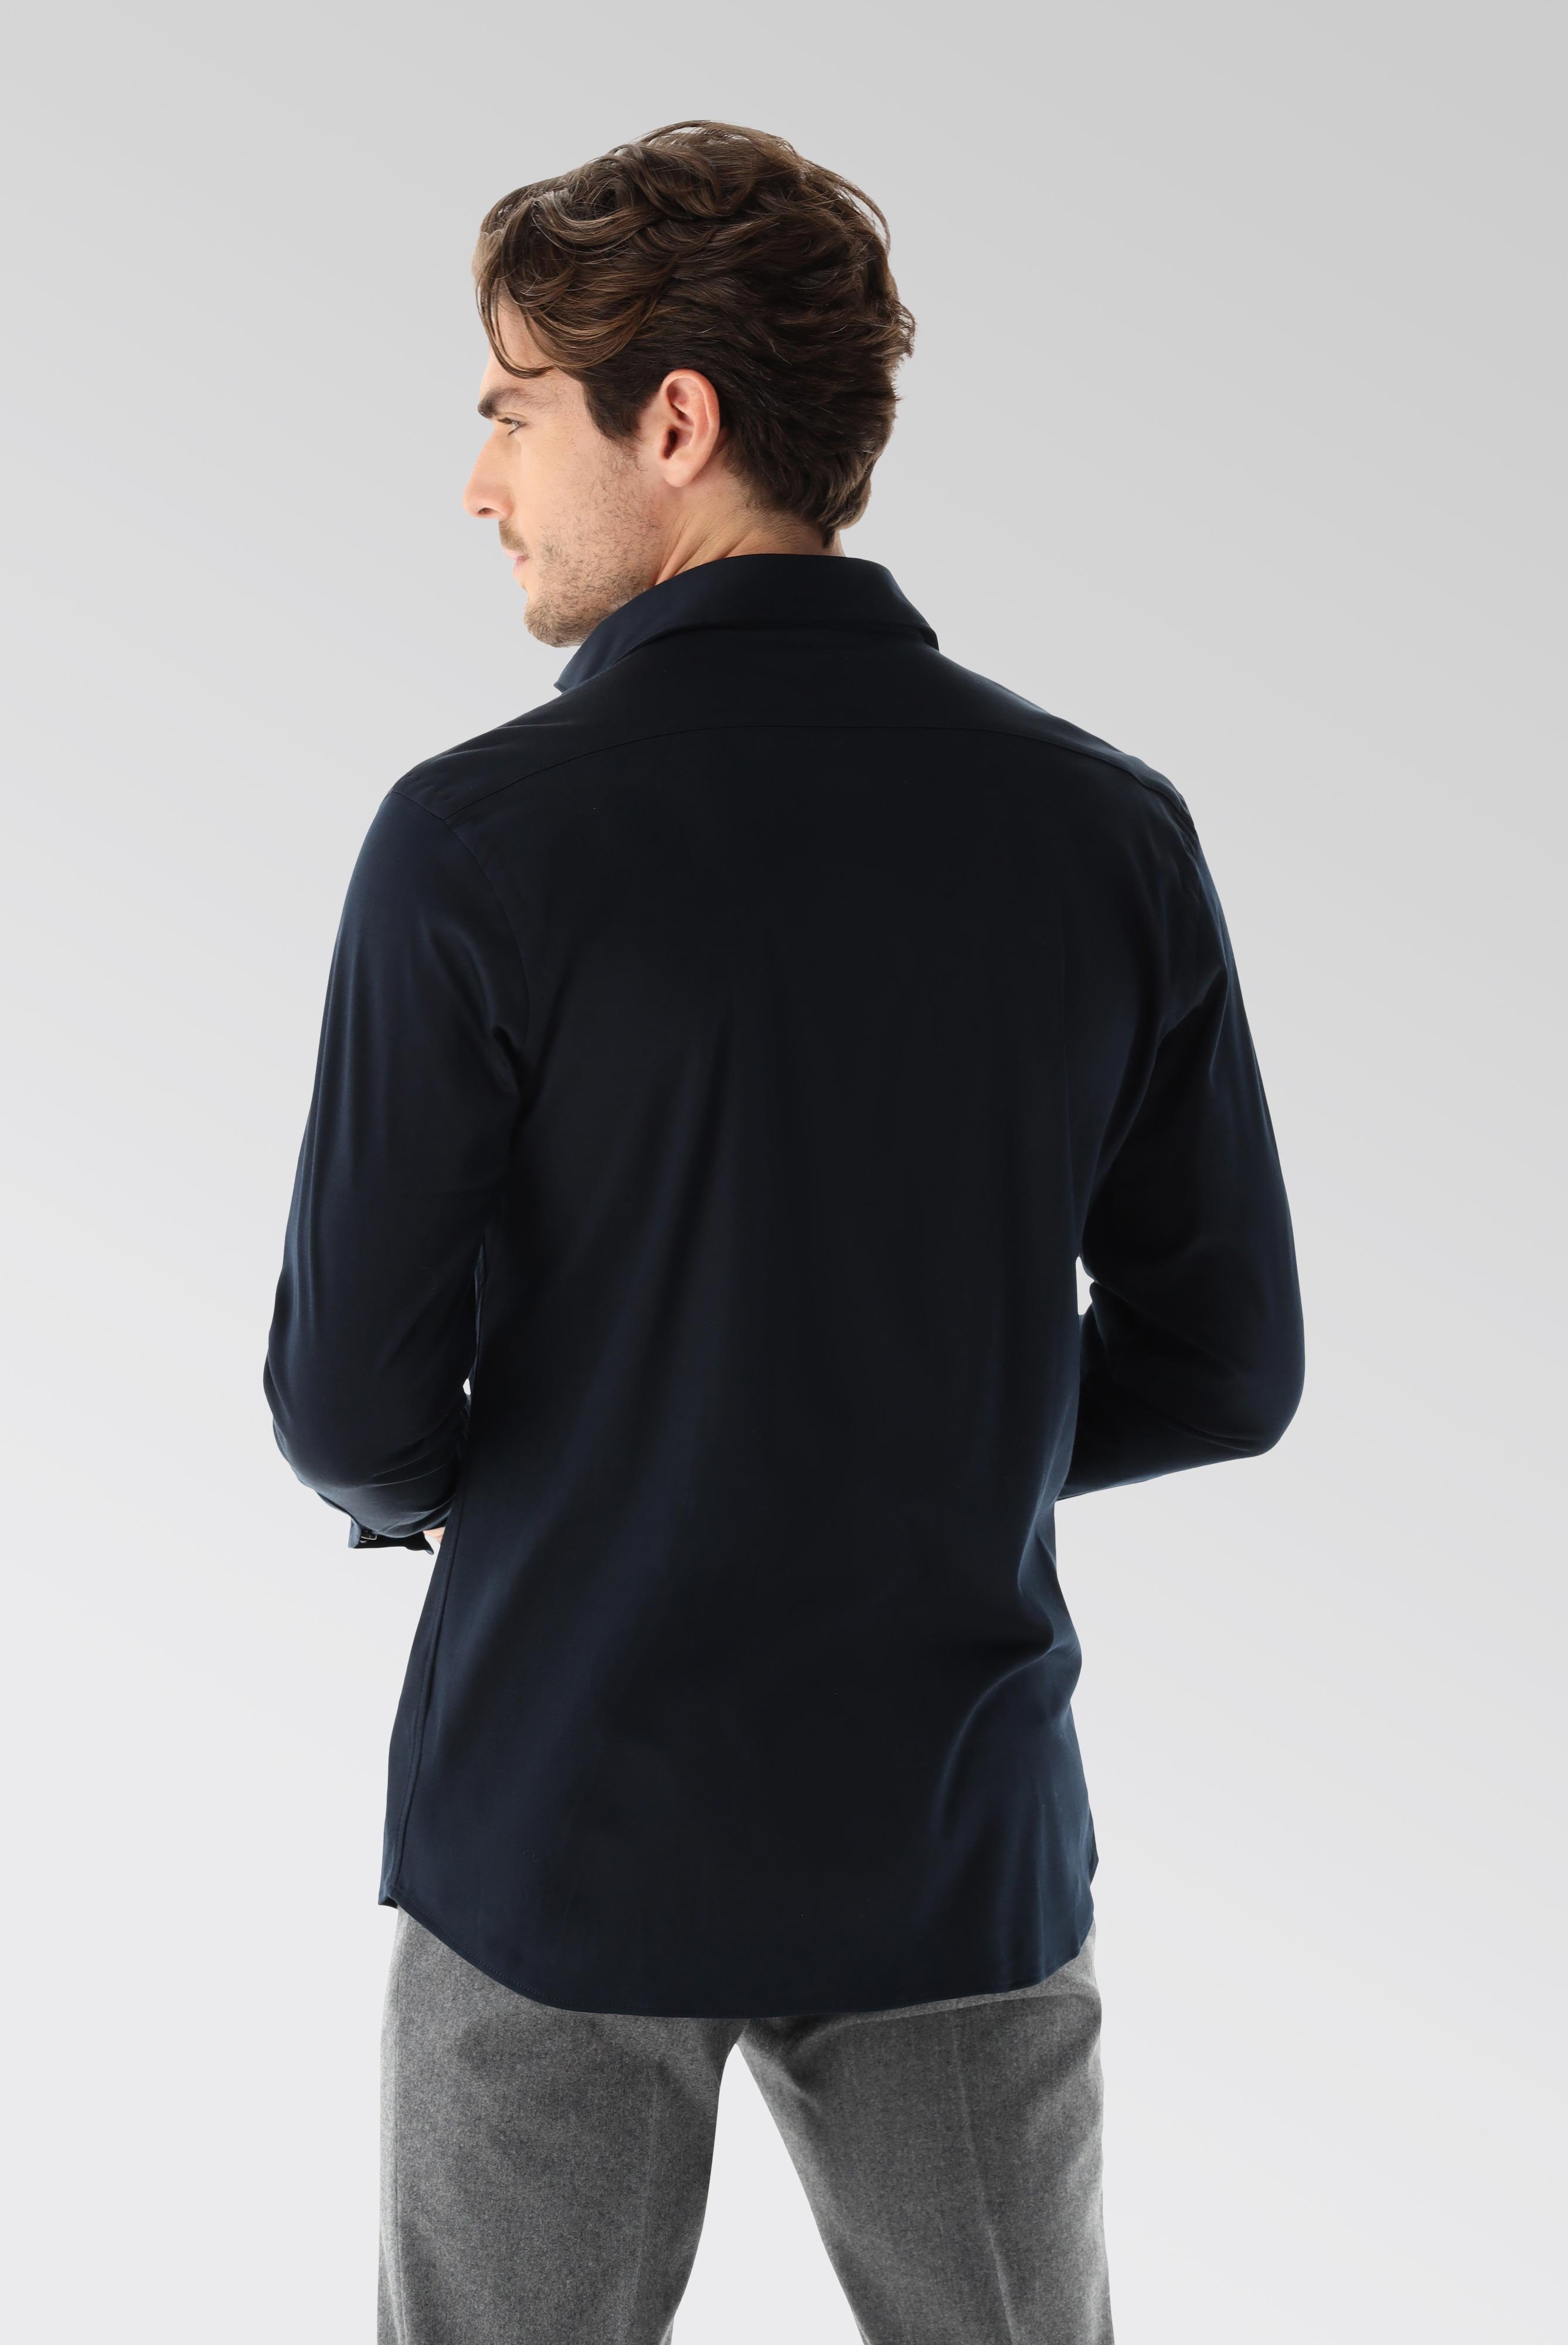 Bügelleichte Hemden+Jersey Hemd mit glänzender Optik Tailor Fit+20.1683.UC.180031.790.S